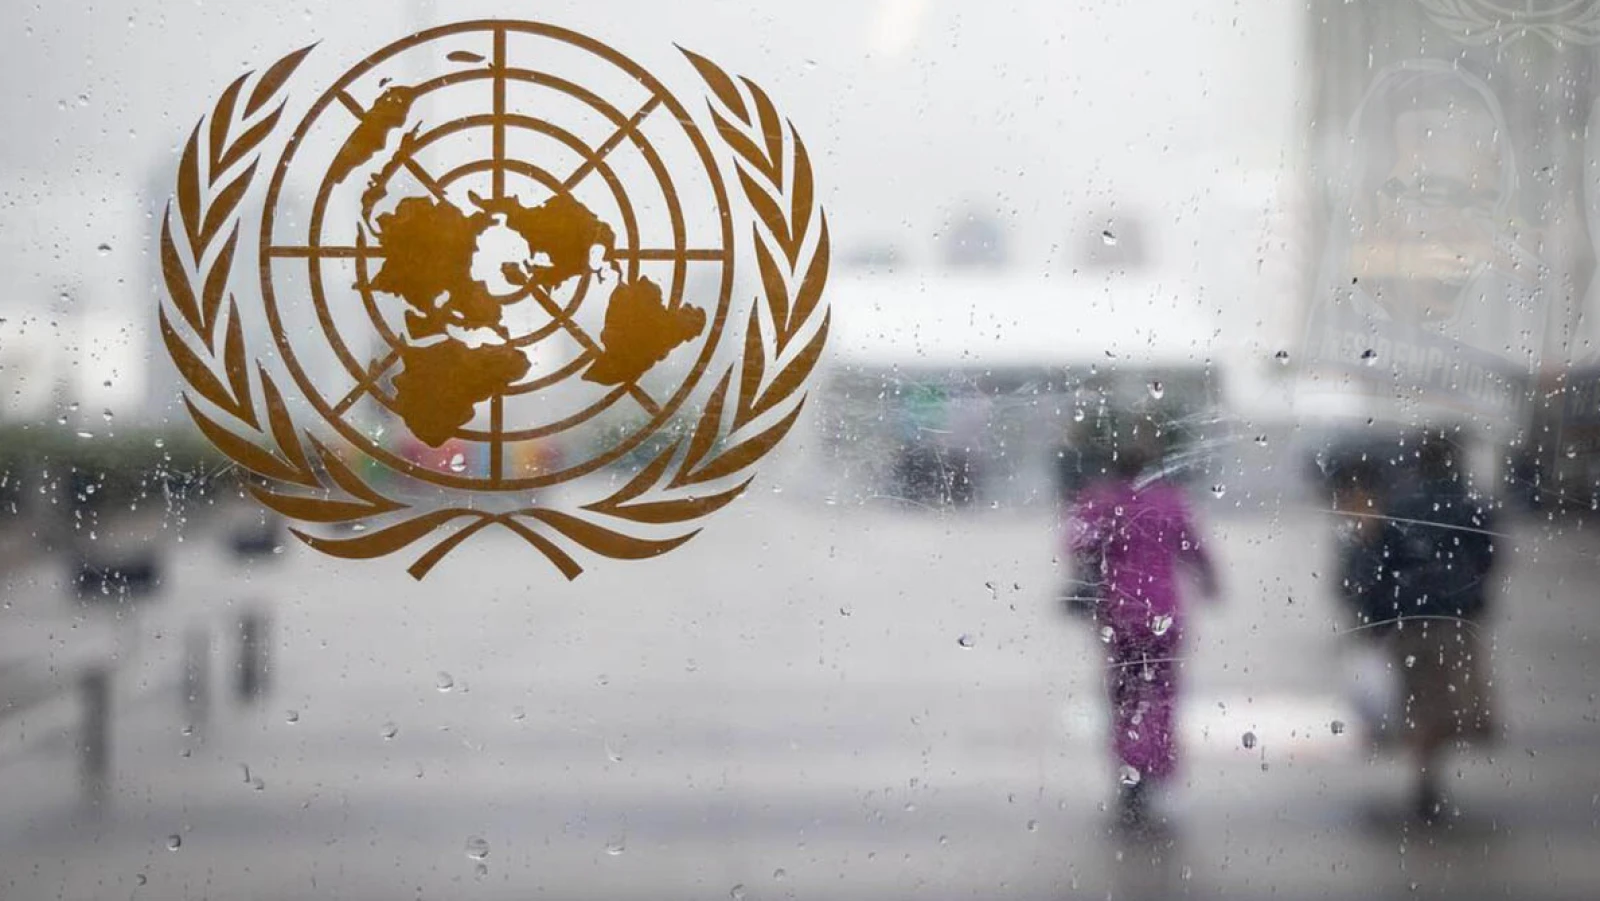 Sidang Komite HAM Sipol PBB: Pemerintah RI Berlindung di Soal-soal Prosedural, Jauh dari Substansial